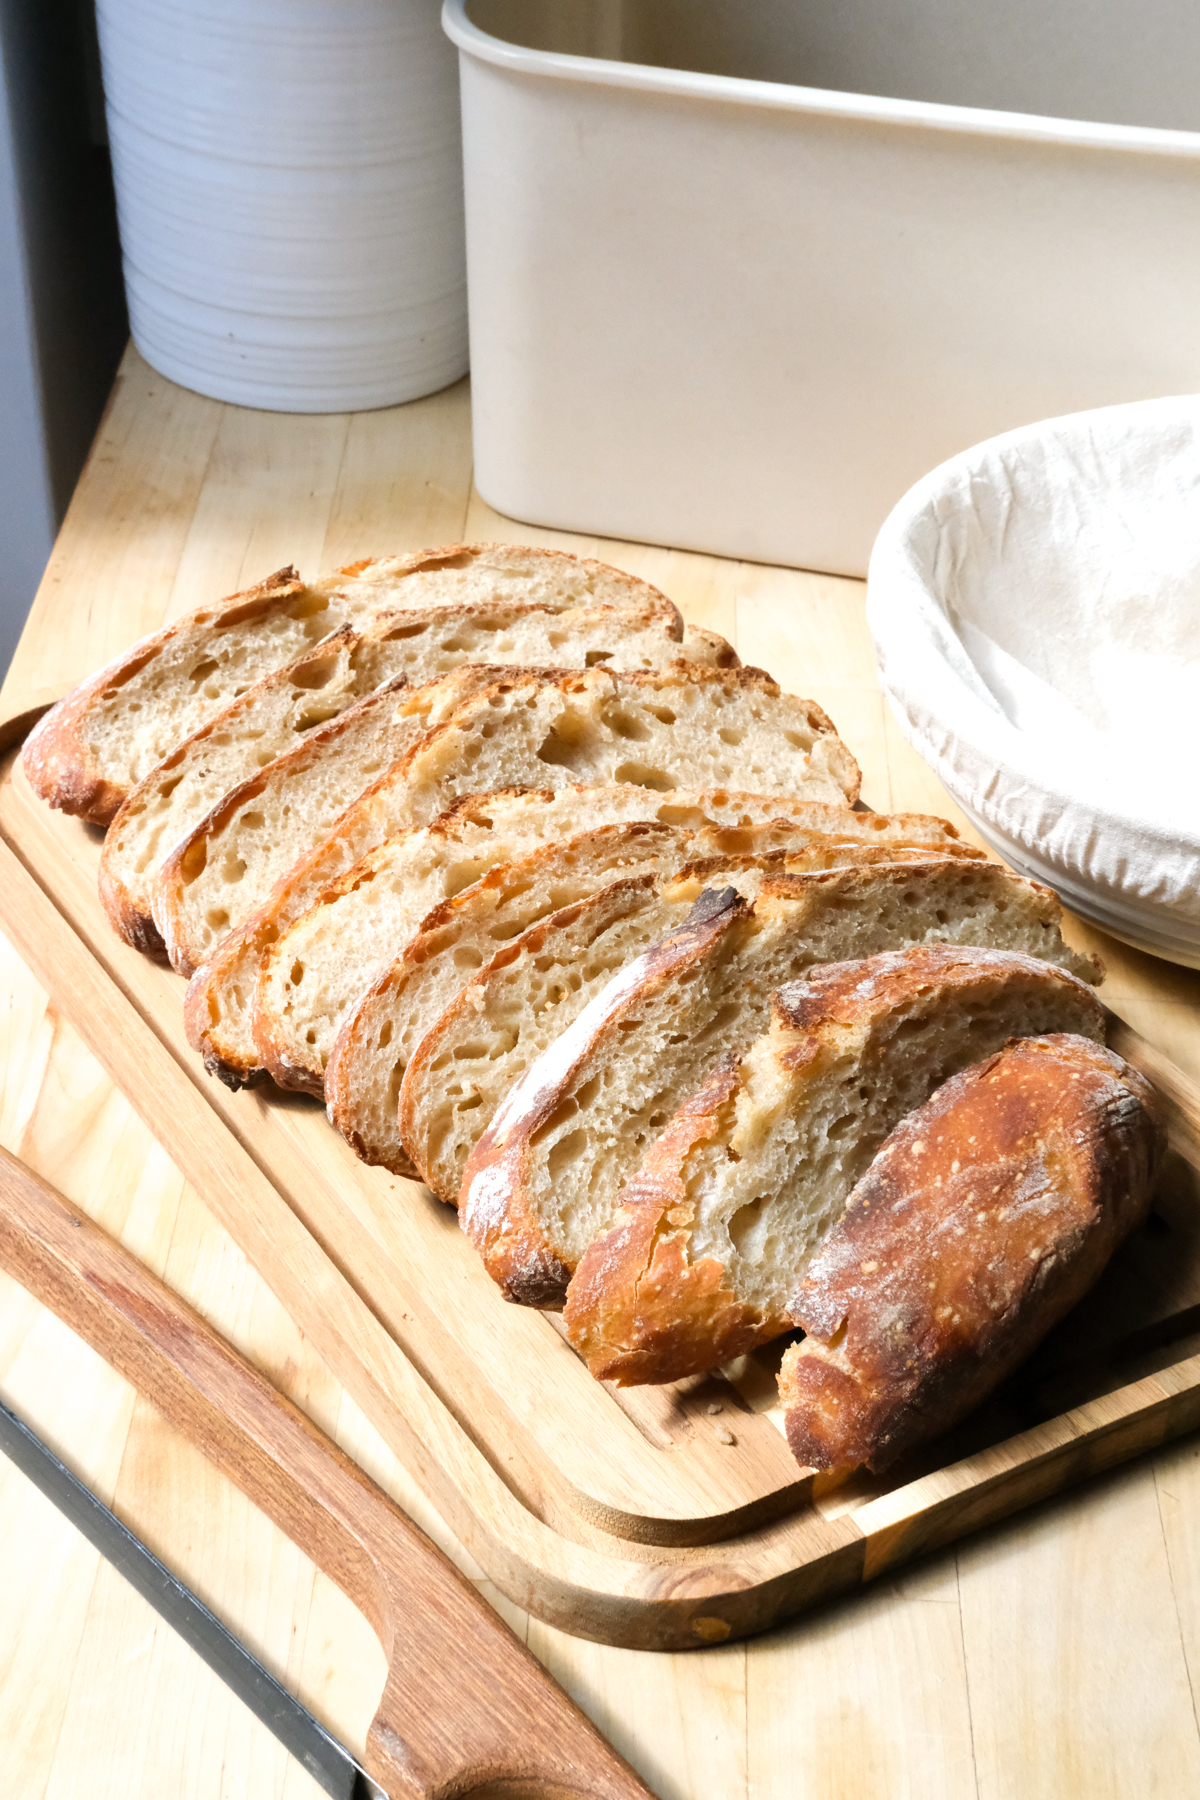 Sourdough Bread Making Kit